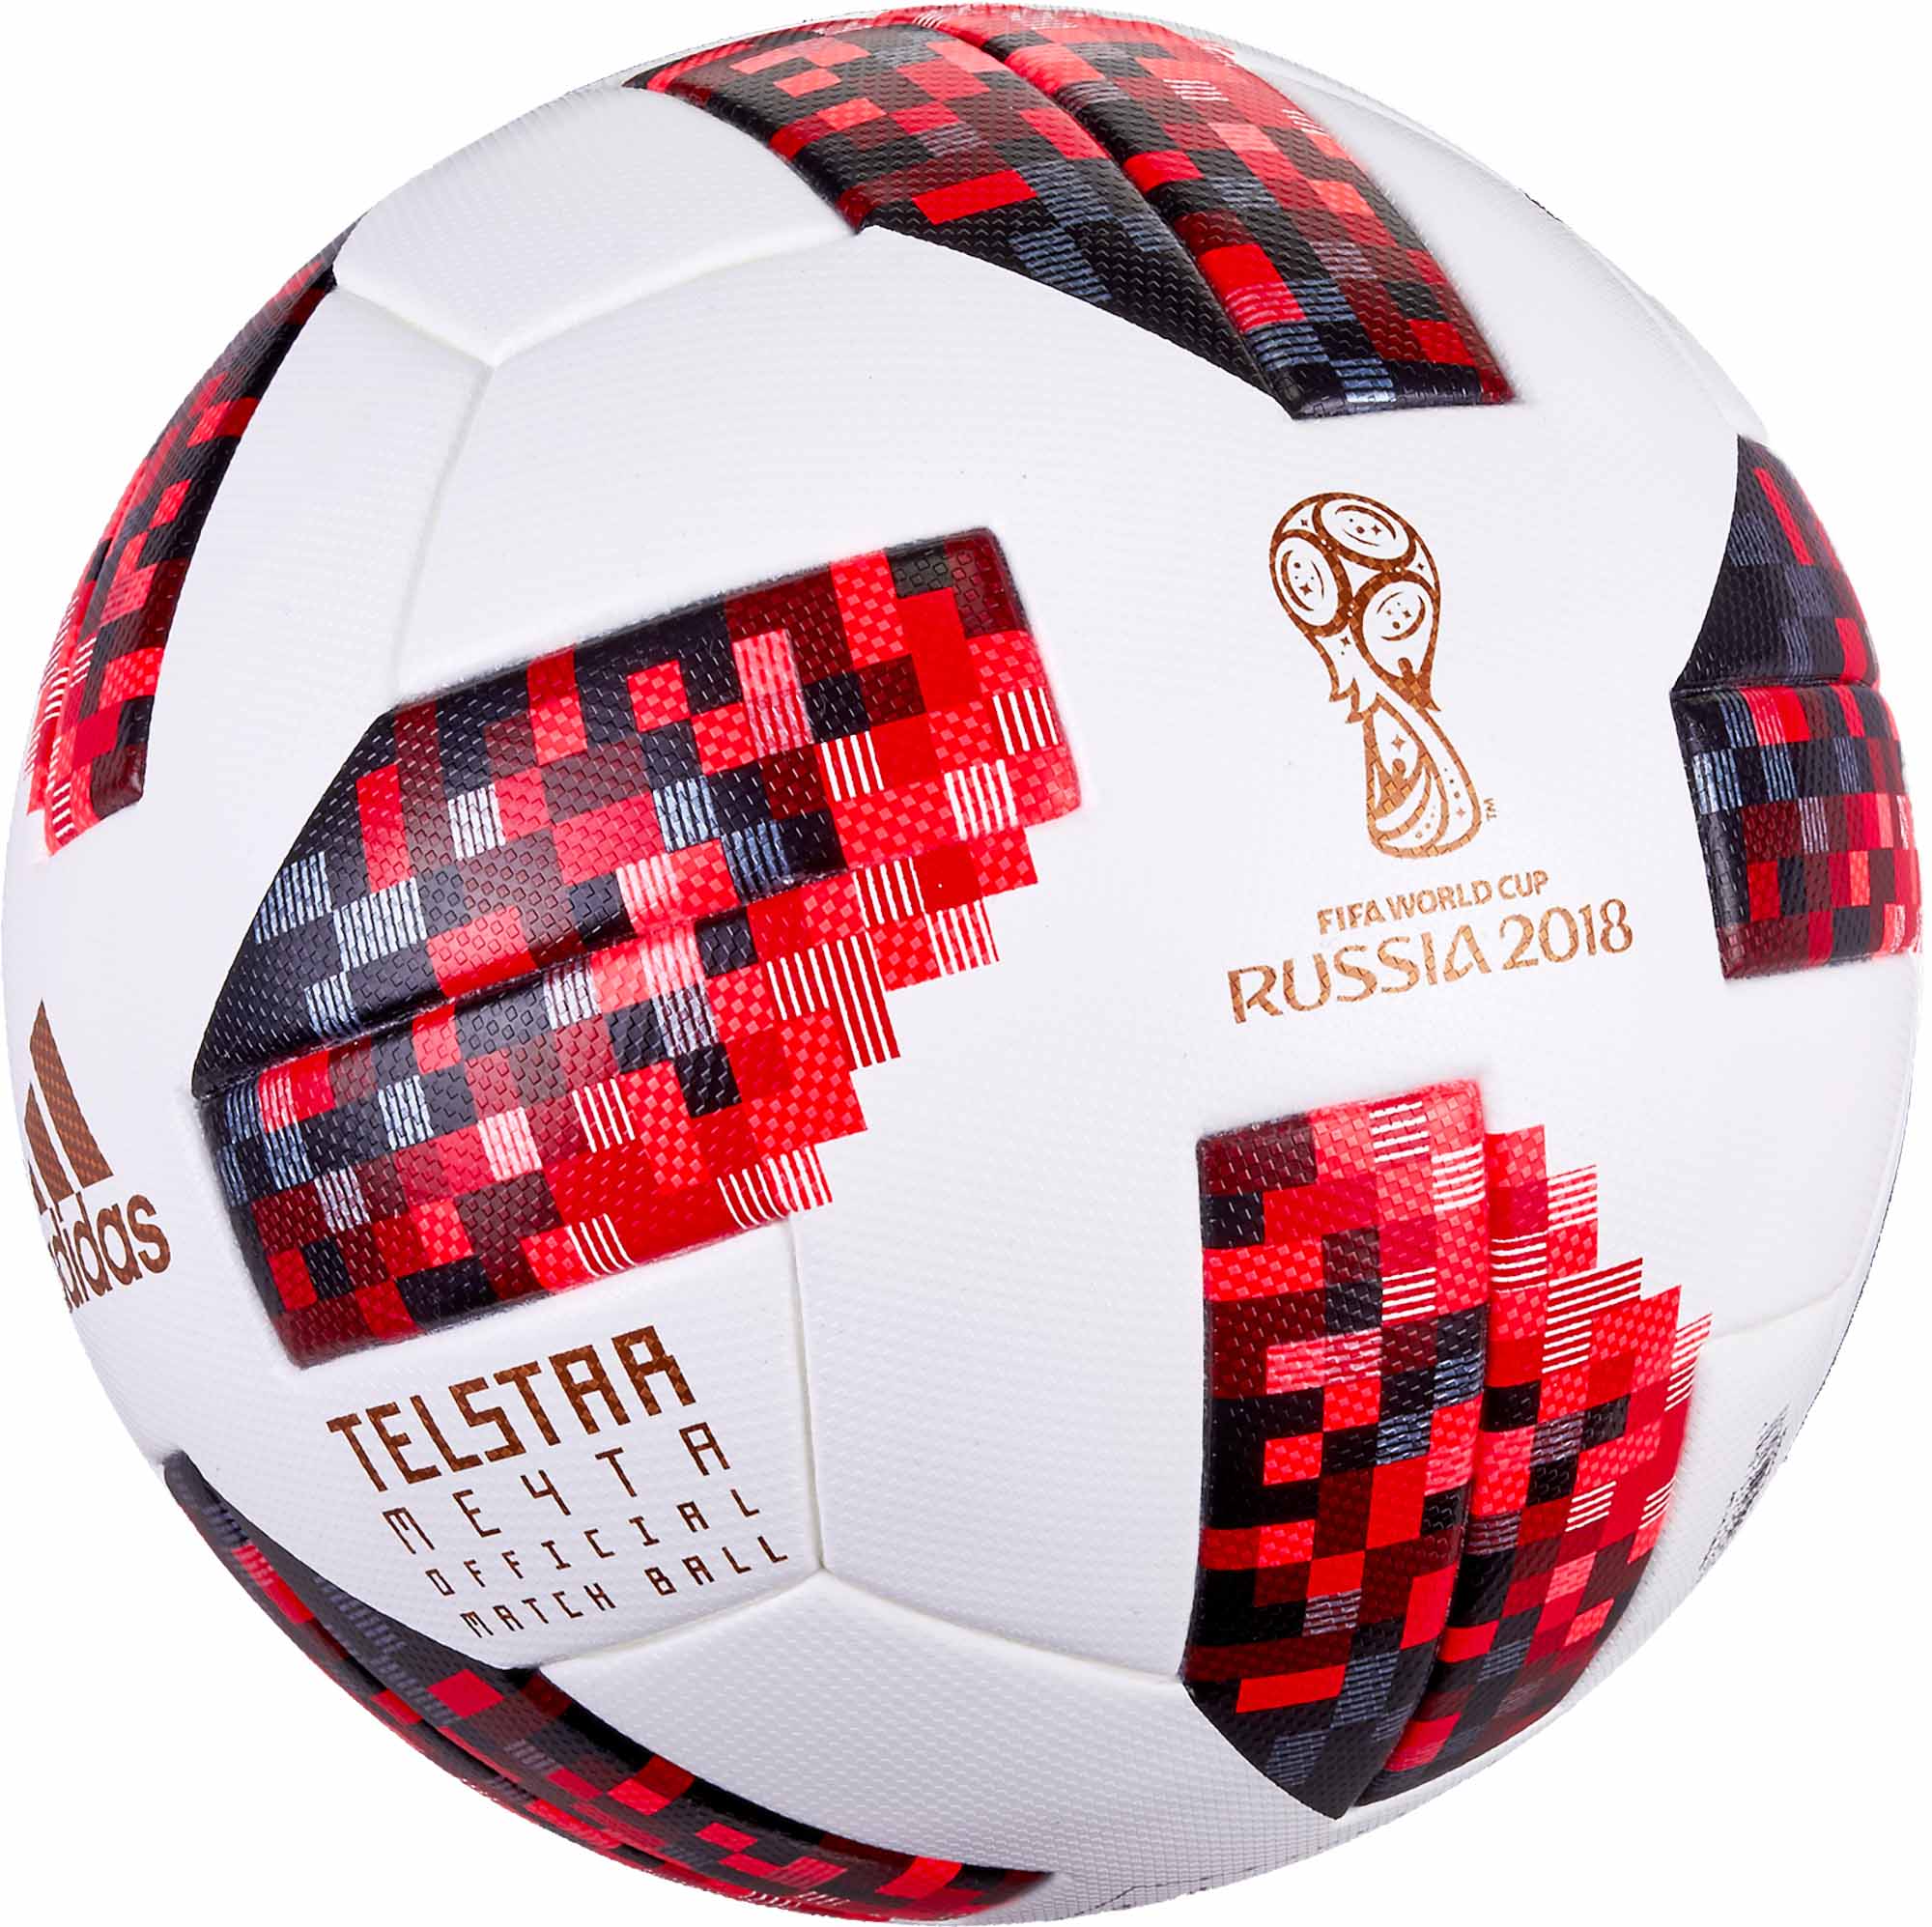 telstar 18 official match ball